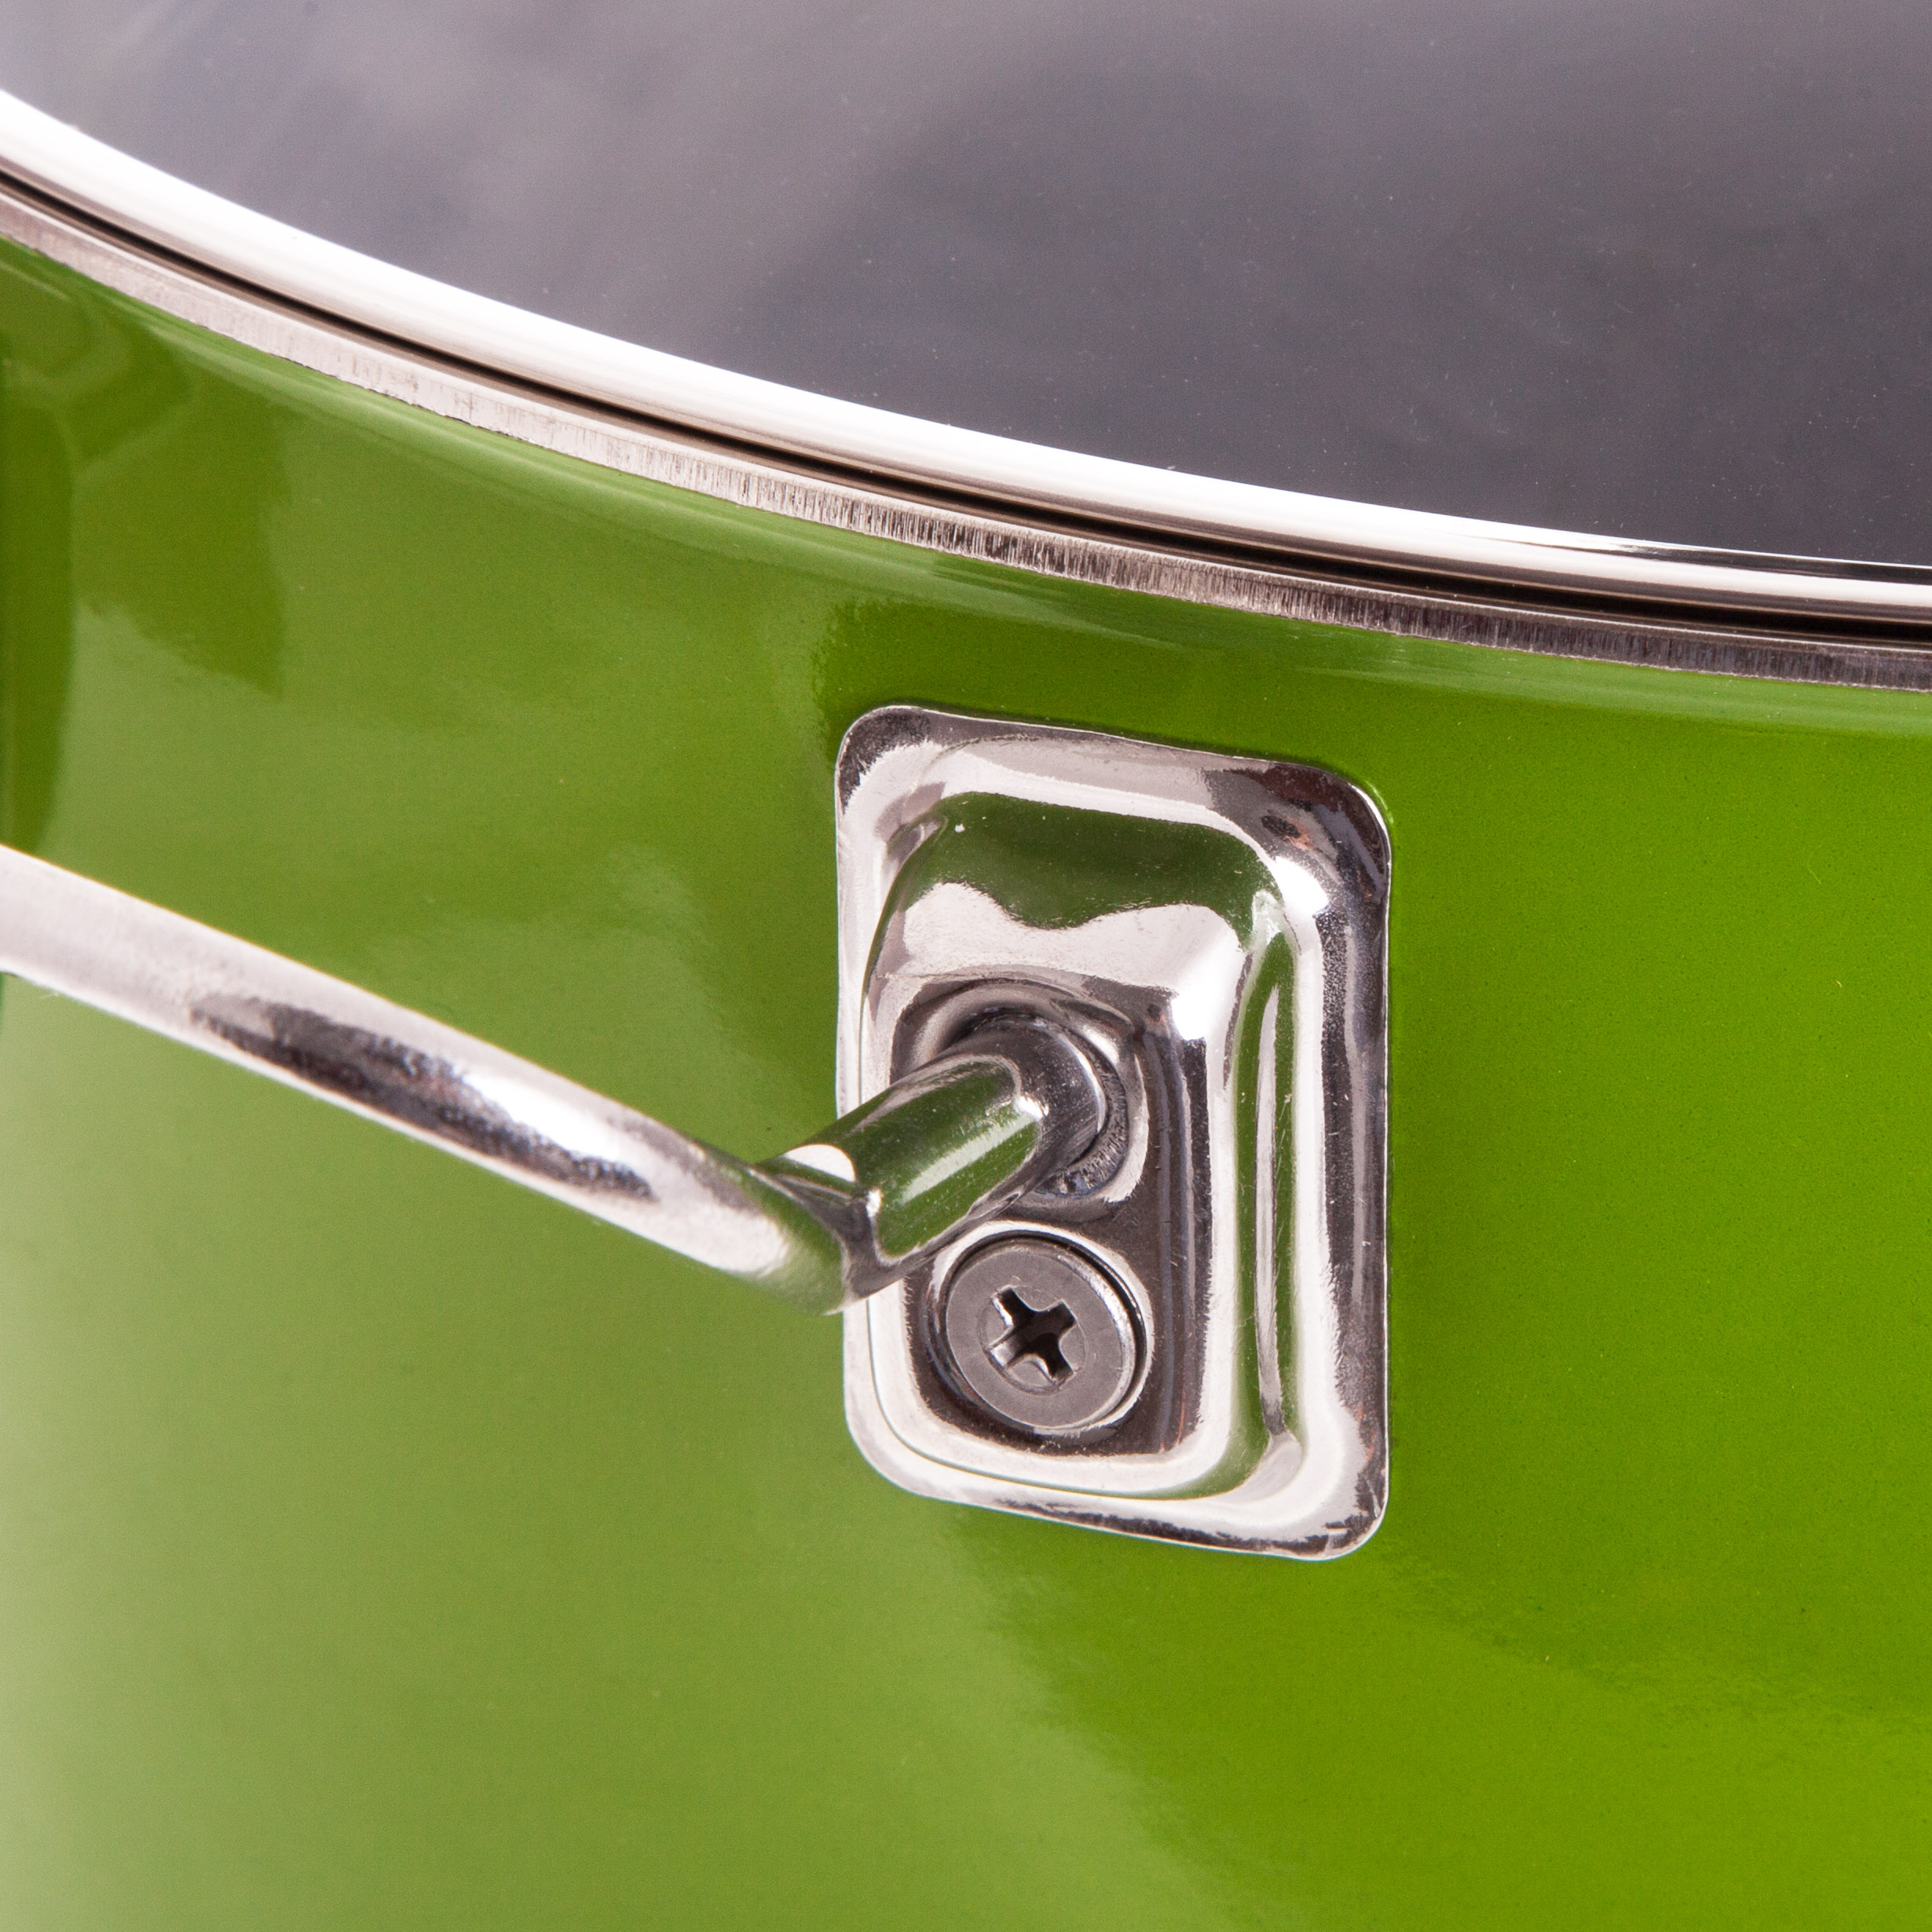 Кастрюля SKK Enameled Steel Series 8 6,8 л, цвет зеленый - фото 2